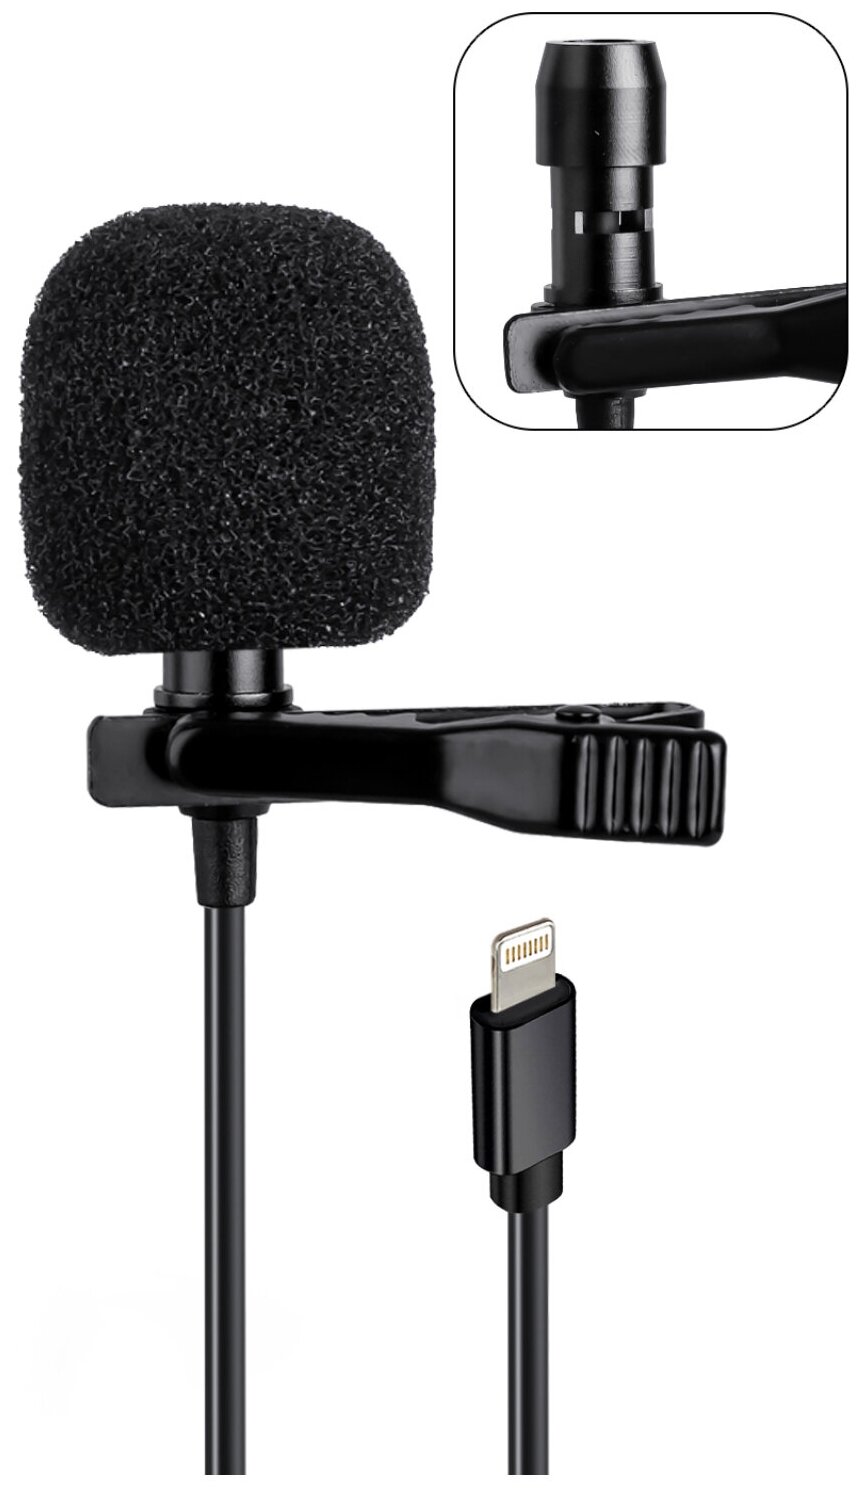 Петличный микрофон для iPhone/iPad (lightning) длина 1.5м iOS